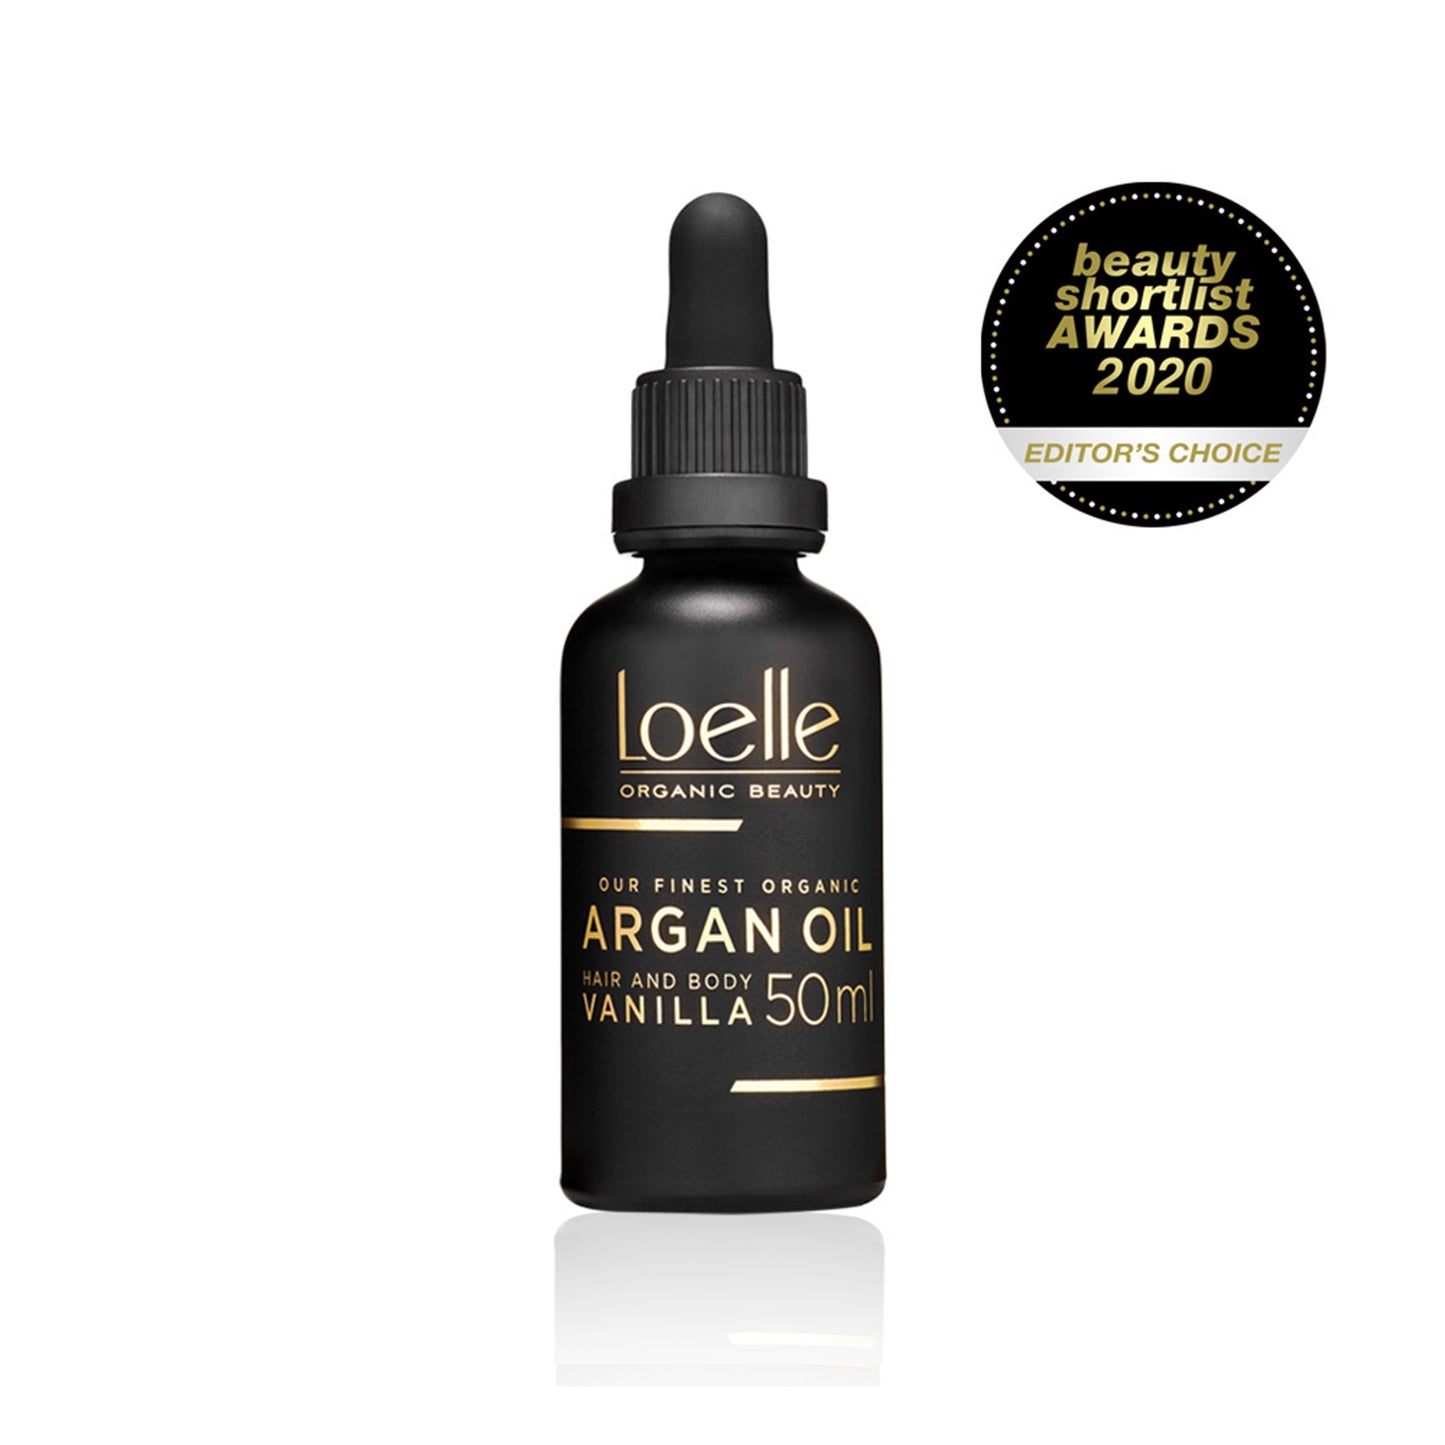 Argan Oil with Vanilla Extract - 50ml